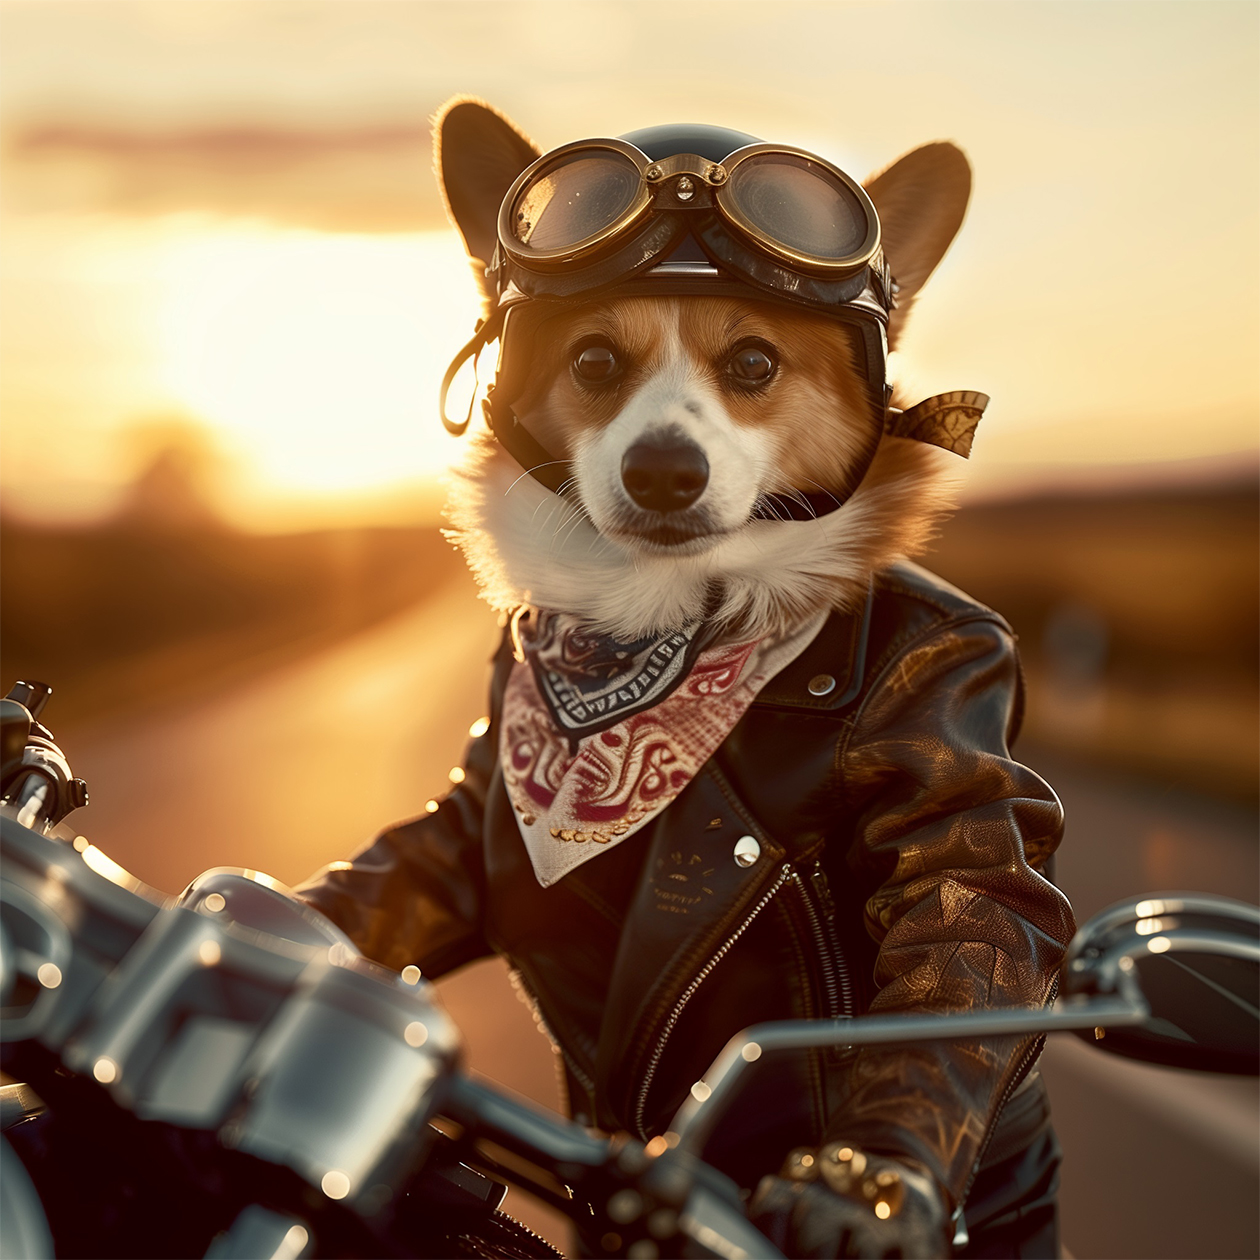 Сложный запрос: уверенный в себе корги-байкер, одетый в миниатюрную кожаную куртку, шлем с очками и причудливую бандану, позирует на классическом мотоцикле Harley⁠-⁠Davidson. Действие происходит на открытой дороге, идущей через захватывающий пейзаж на закате, теплый свет заходящего солнца освещает сцену, создавая длинные тени и ощущение безграничной свободы